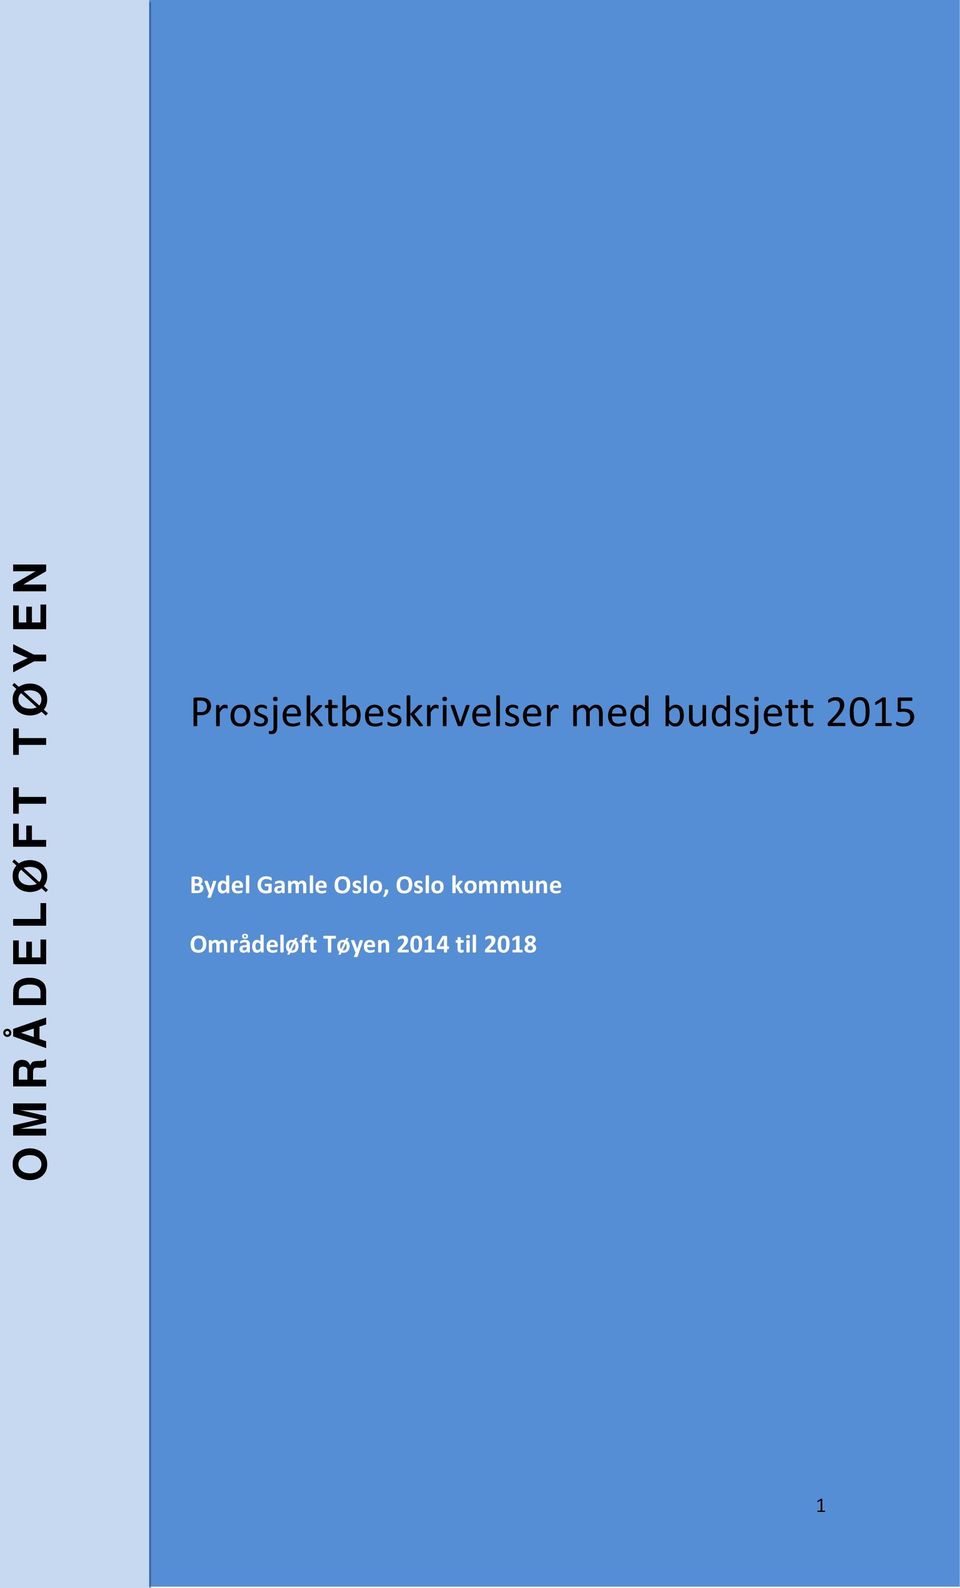 budsjett 2015 Bydel Gamle Oslo,